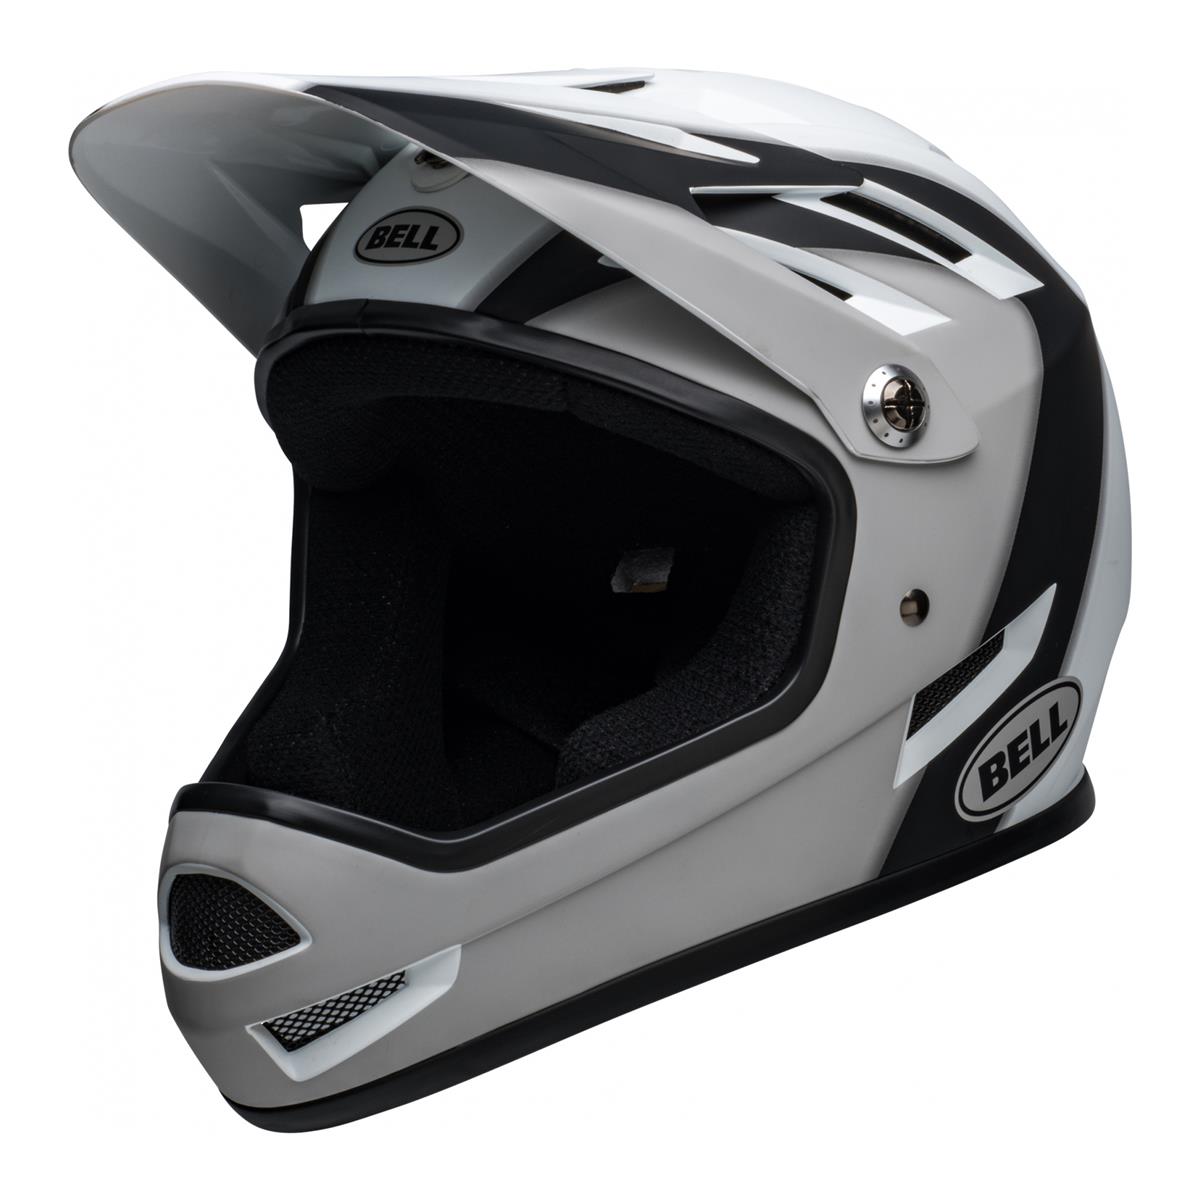 Sanction Full Face Helmet Black/White Size L (58-60cm)